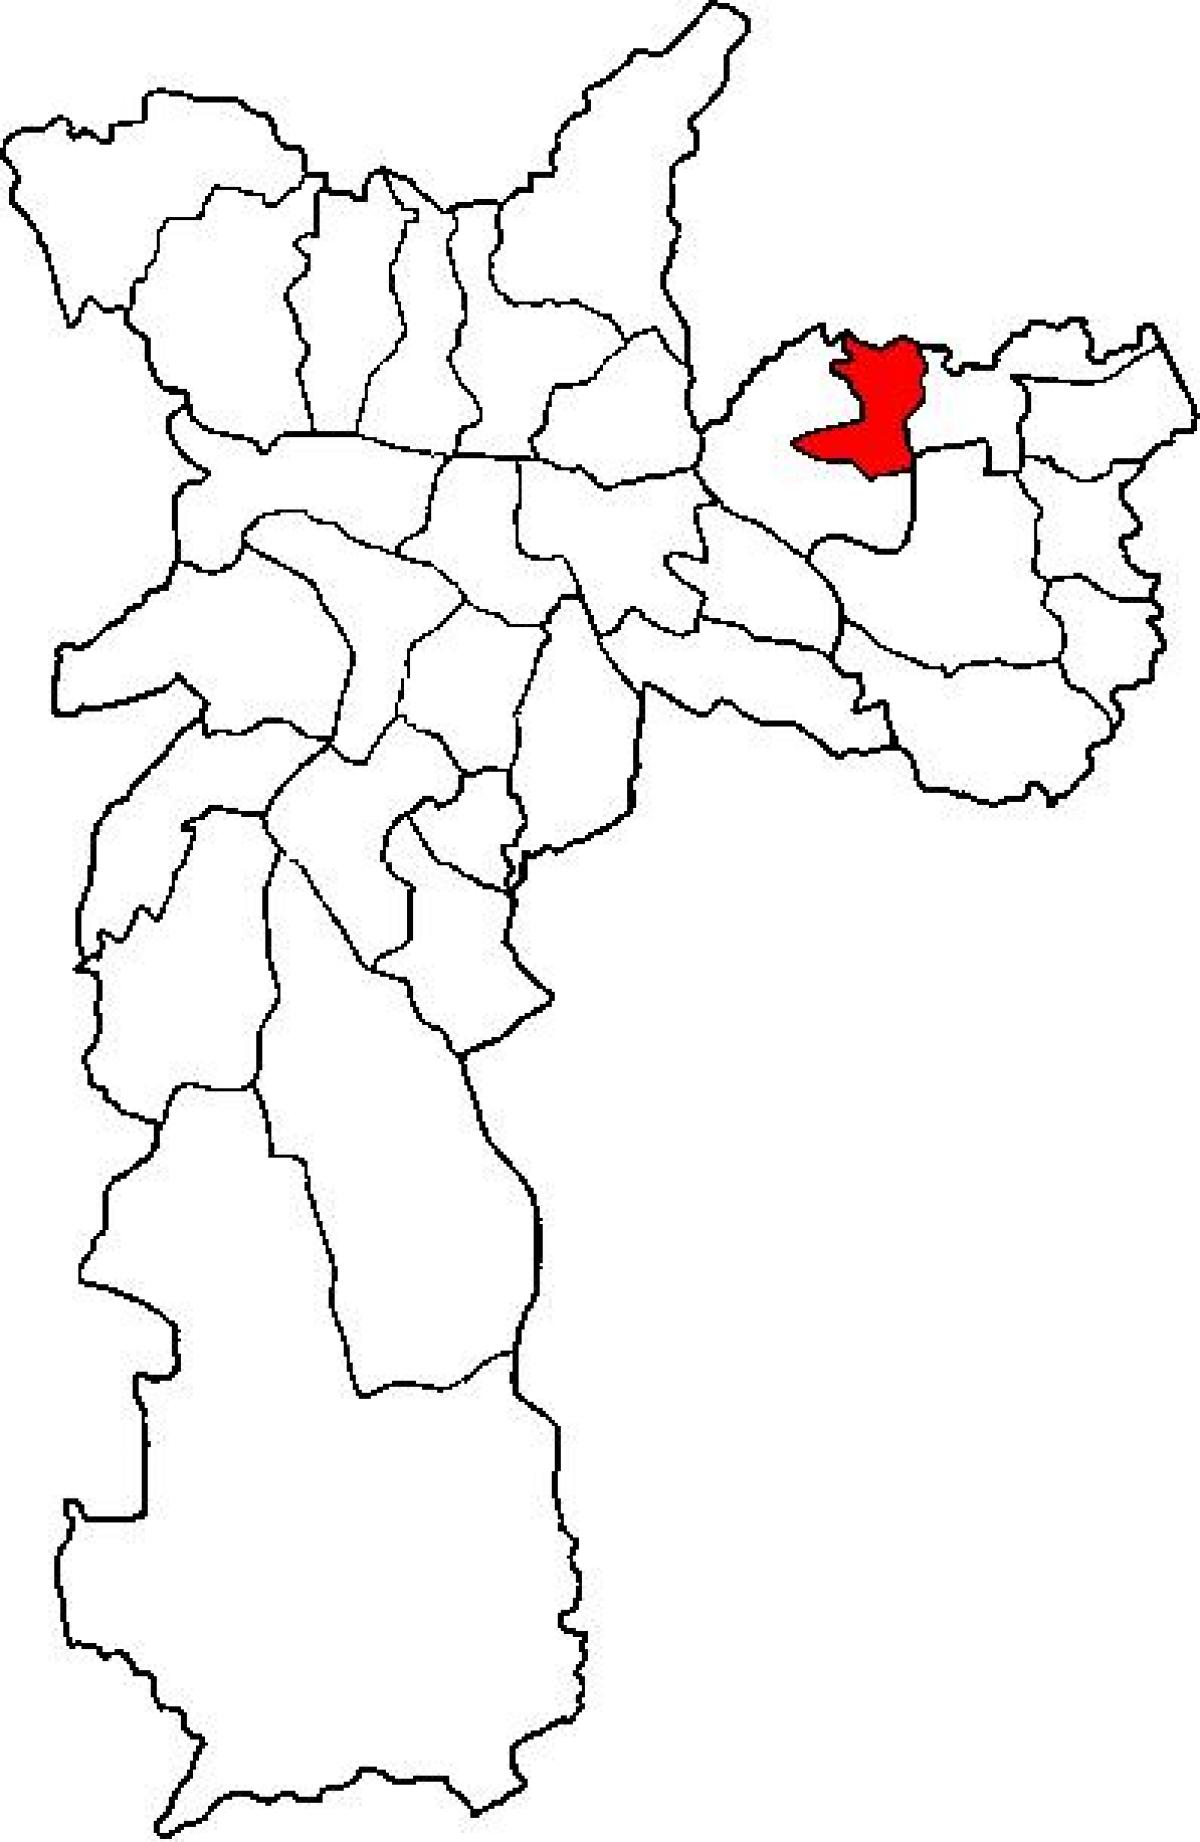 Peta Ermelino Matarazzo sub-wilayah São Paulo